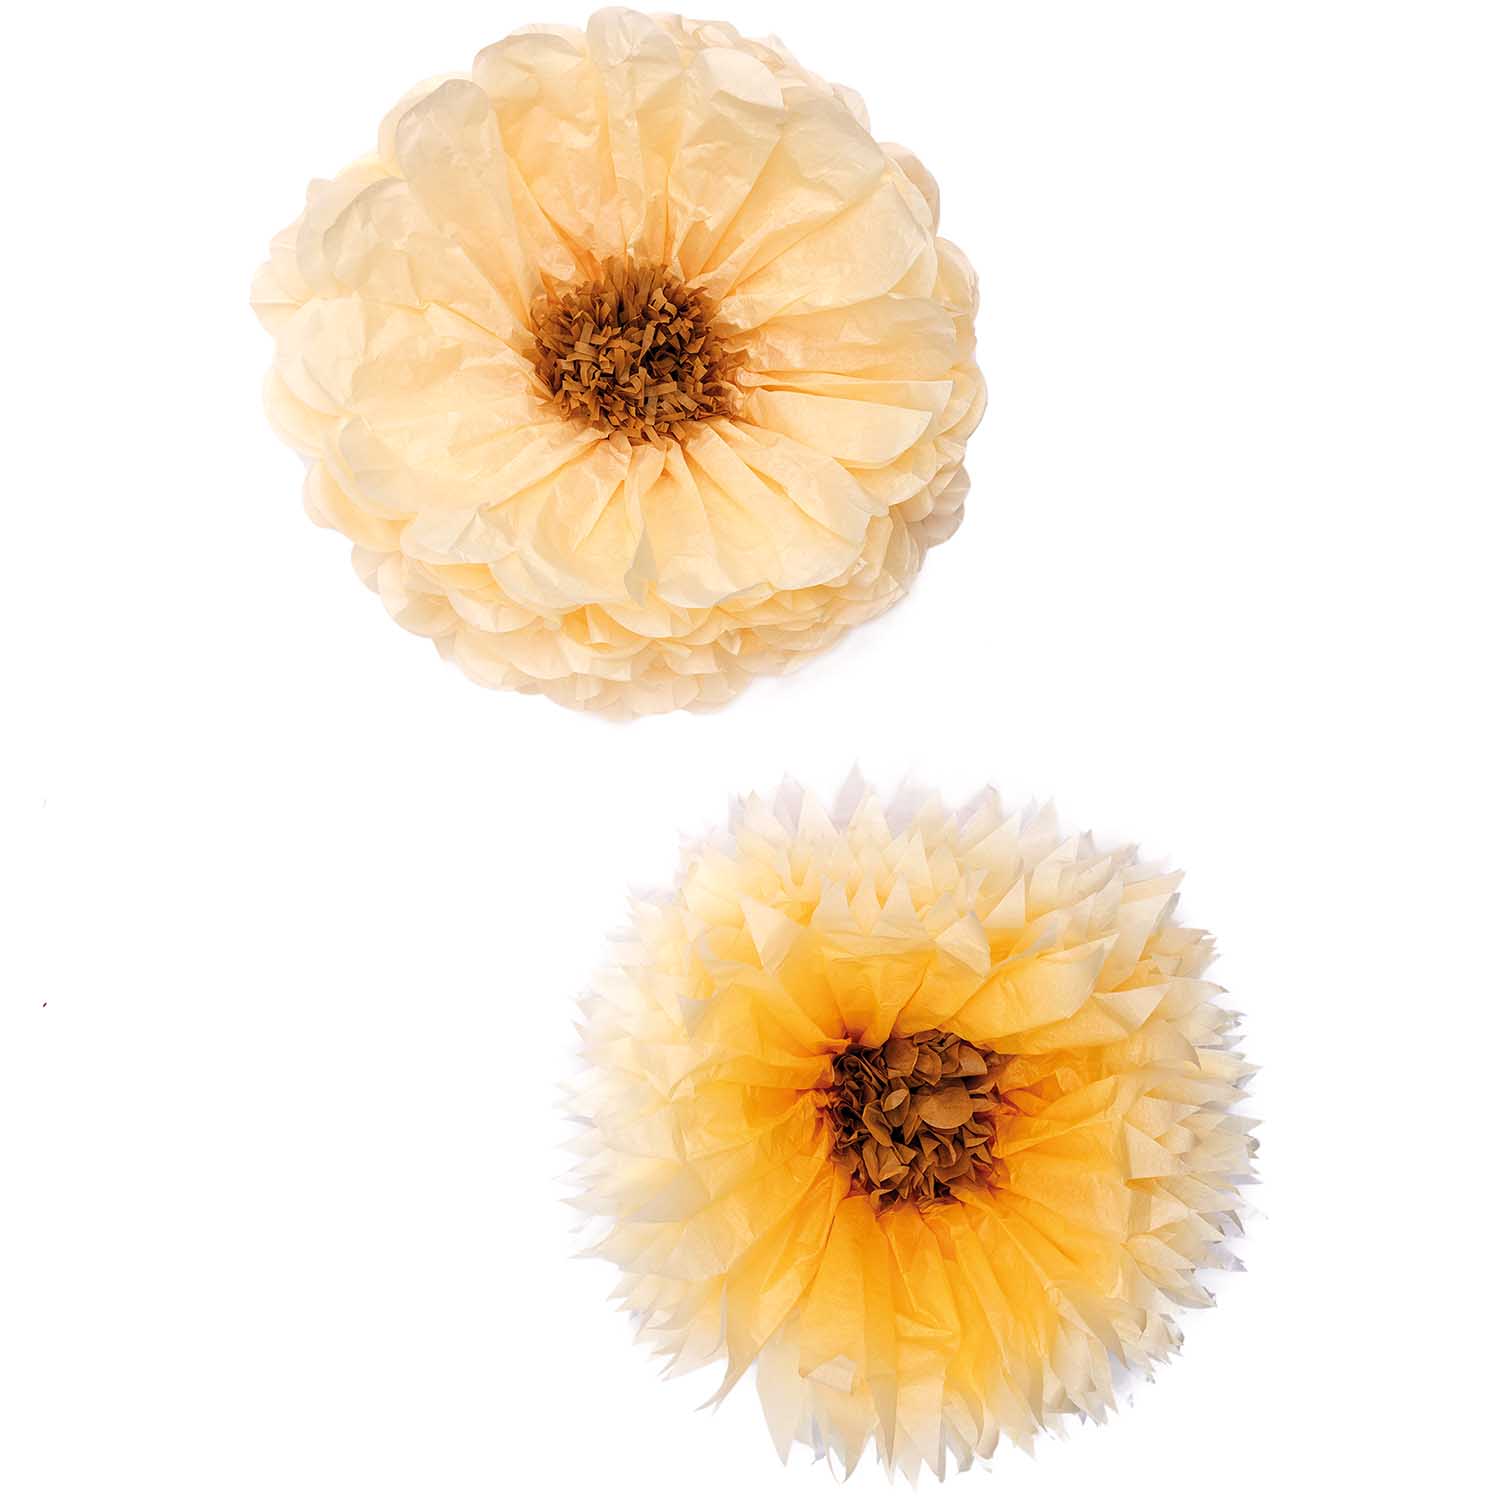 Tissue papier bloemen ercu en zacht geel (Ø 40cm)